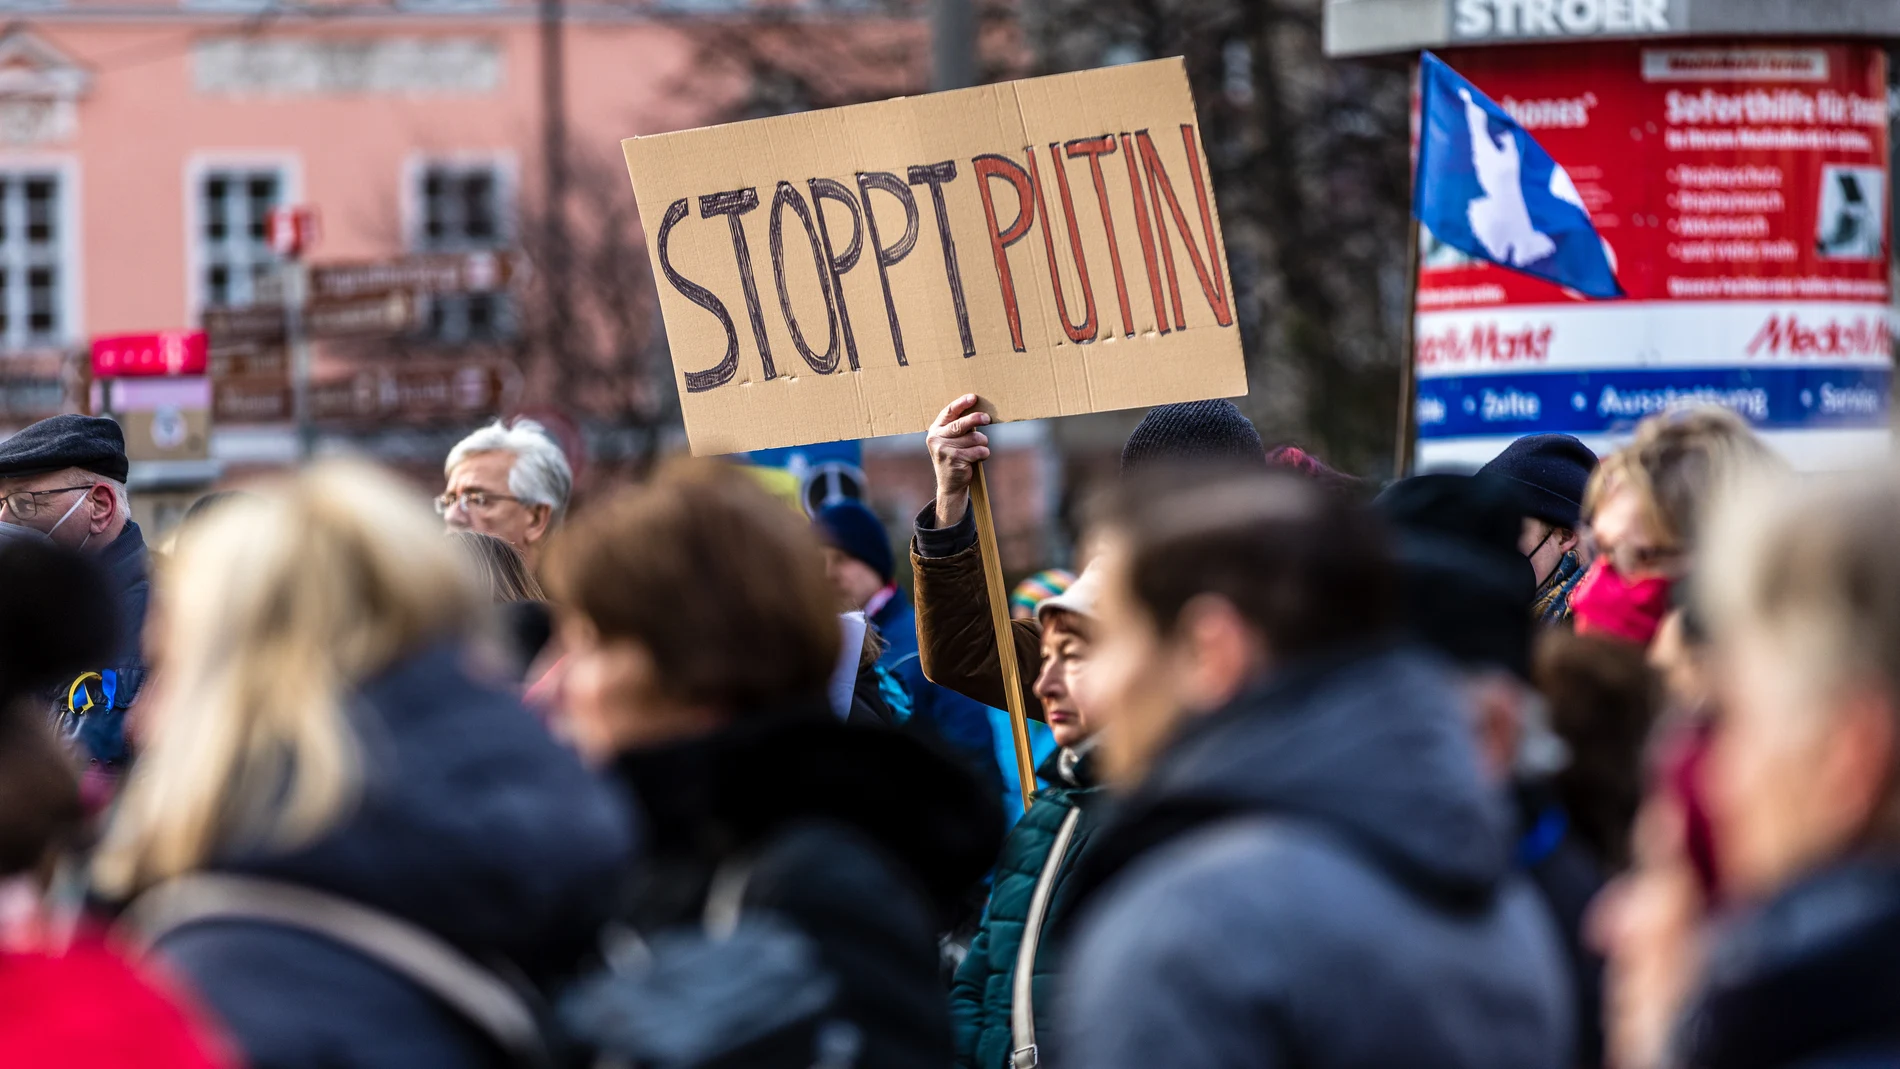 Un cartel con el lema "Stop Putin" durante una manifestación en la plaza Altmarkt, contra la invasión rusa de Ucrania